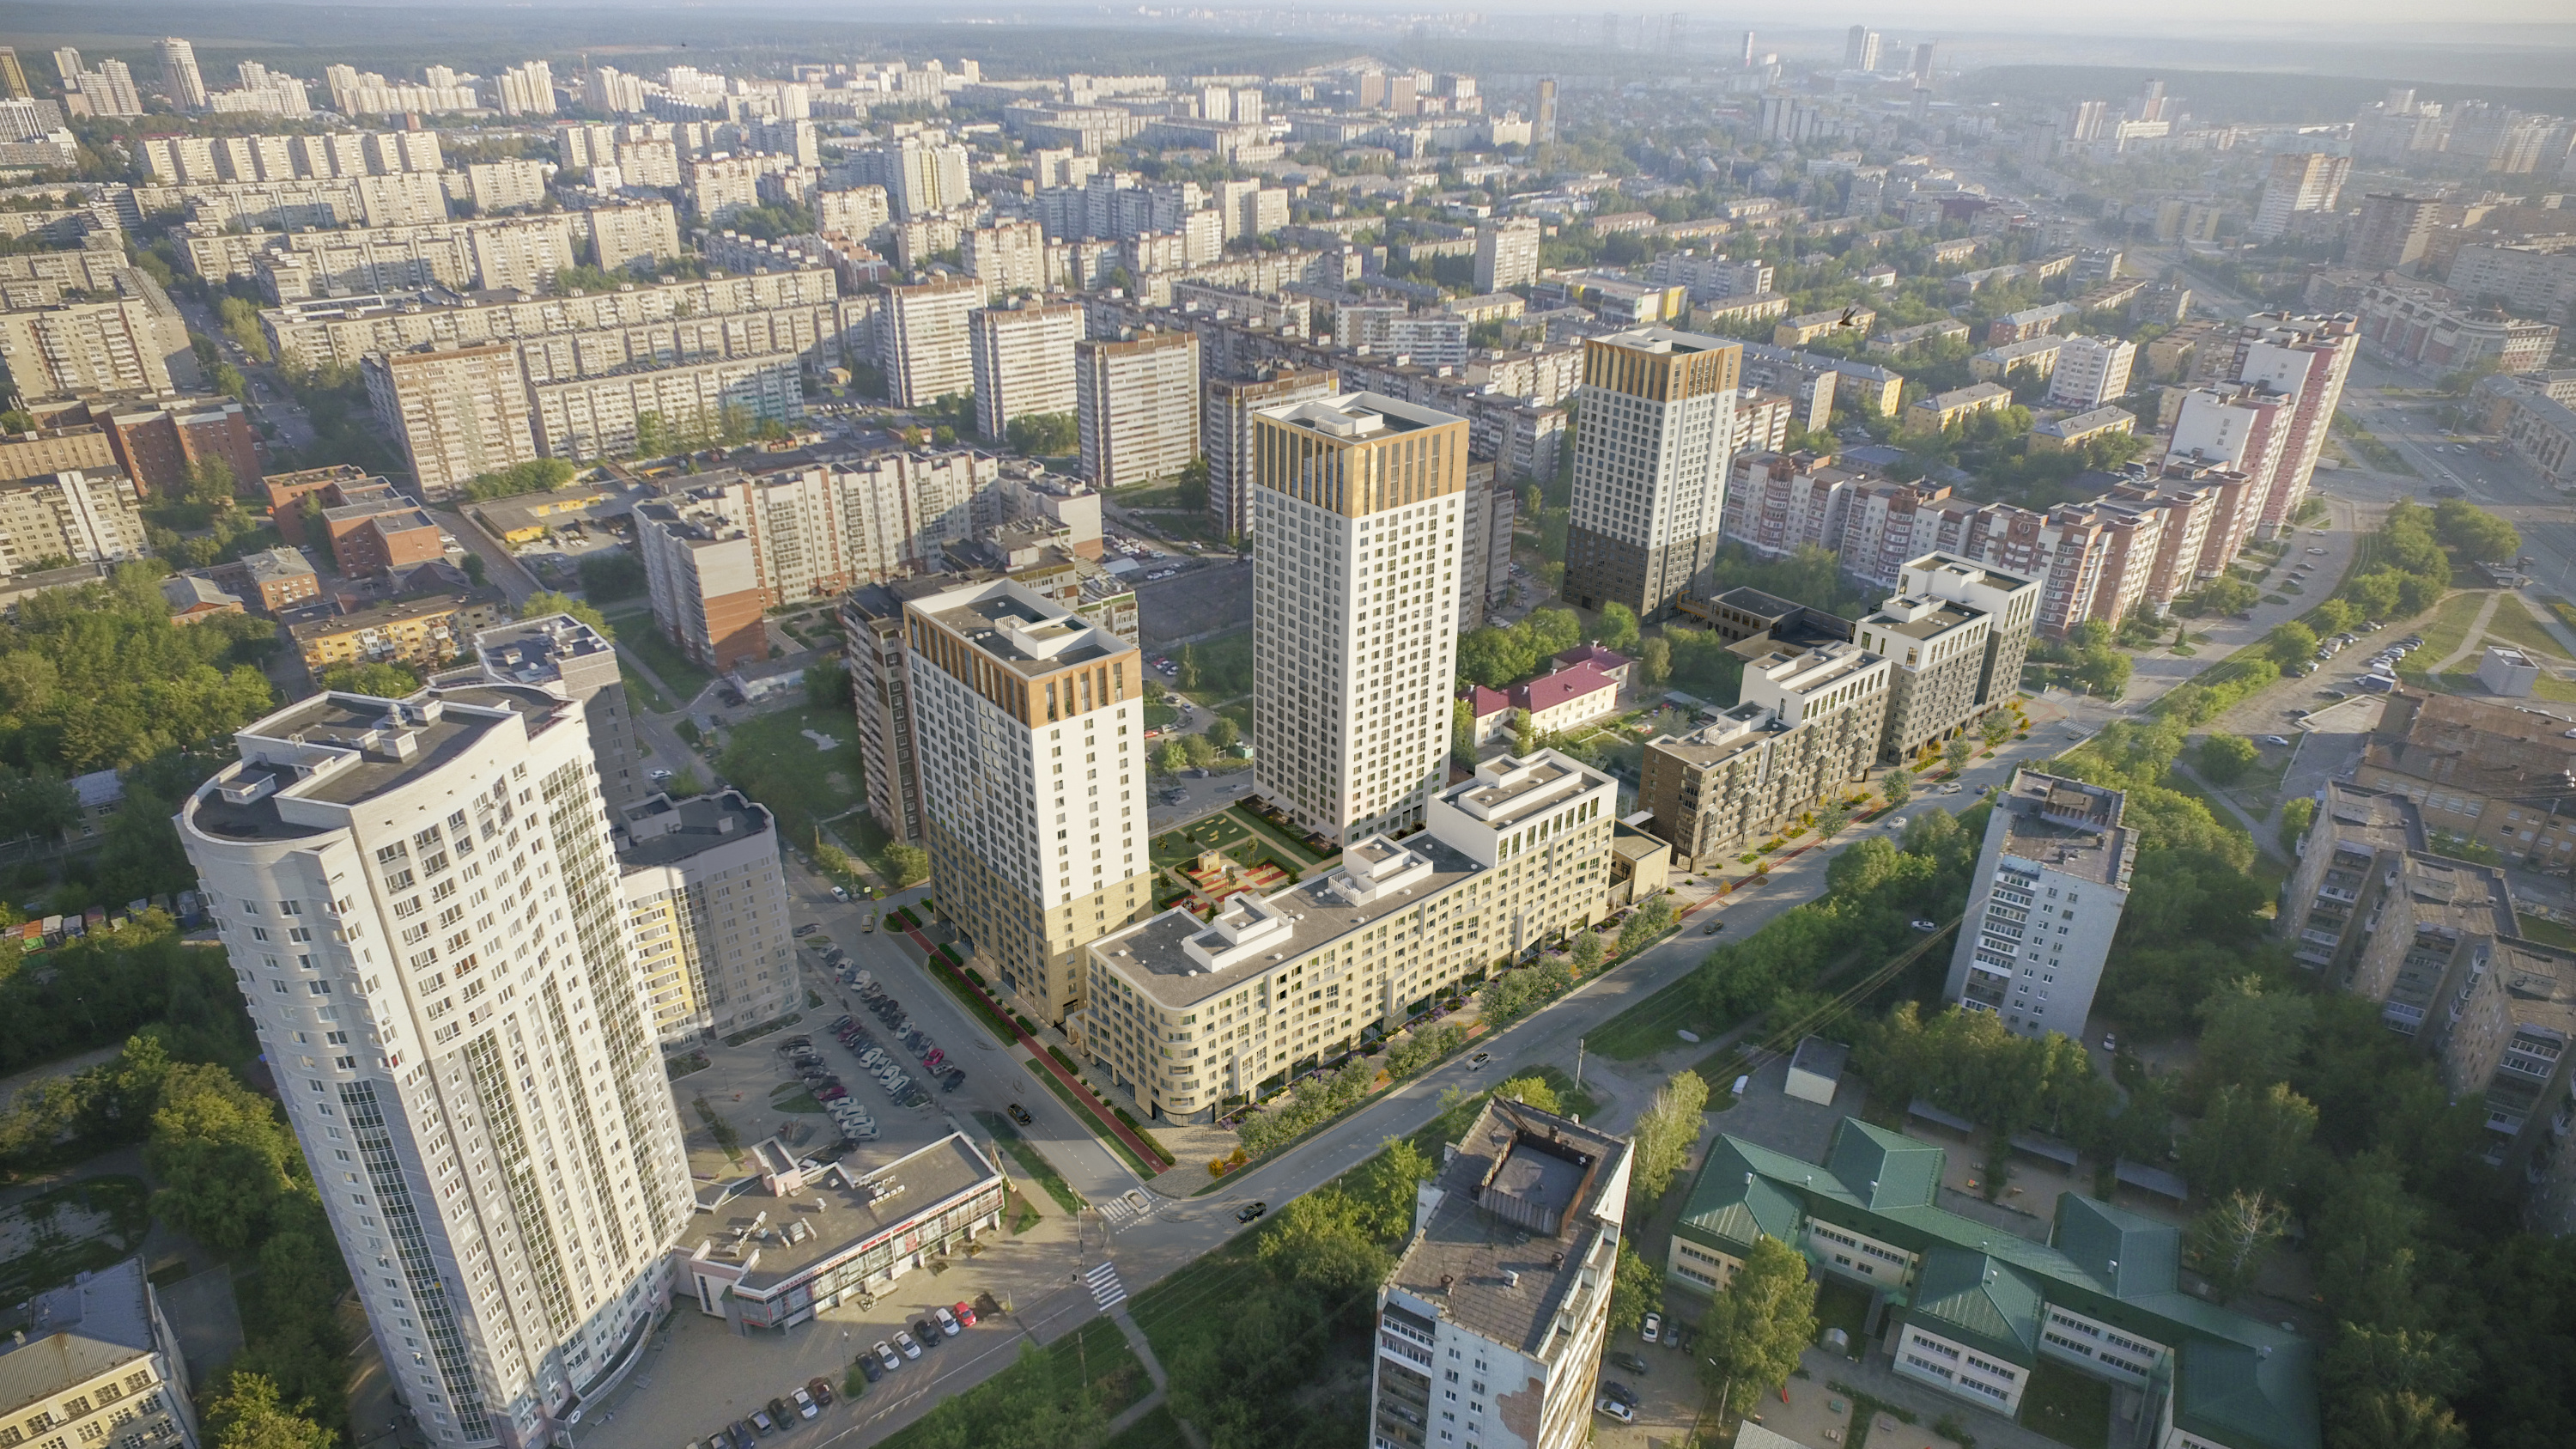 «Атомстройкомплекс» развивает район с 2010 года: у метро «Уралмаш» и Летнего парка выросло множество жилых домов, офисный центр ASK, реконструирована школа № 80